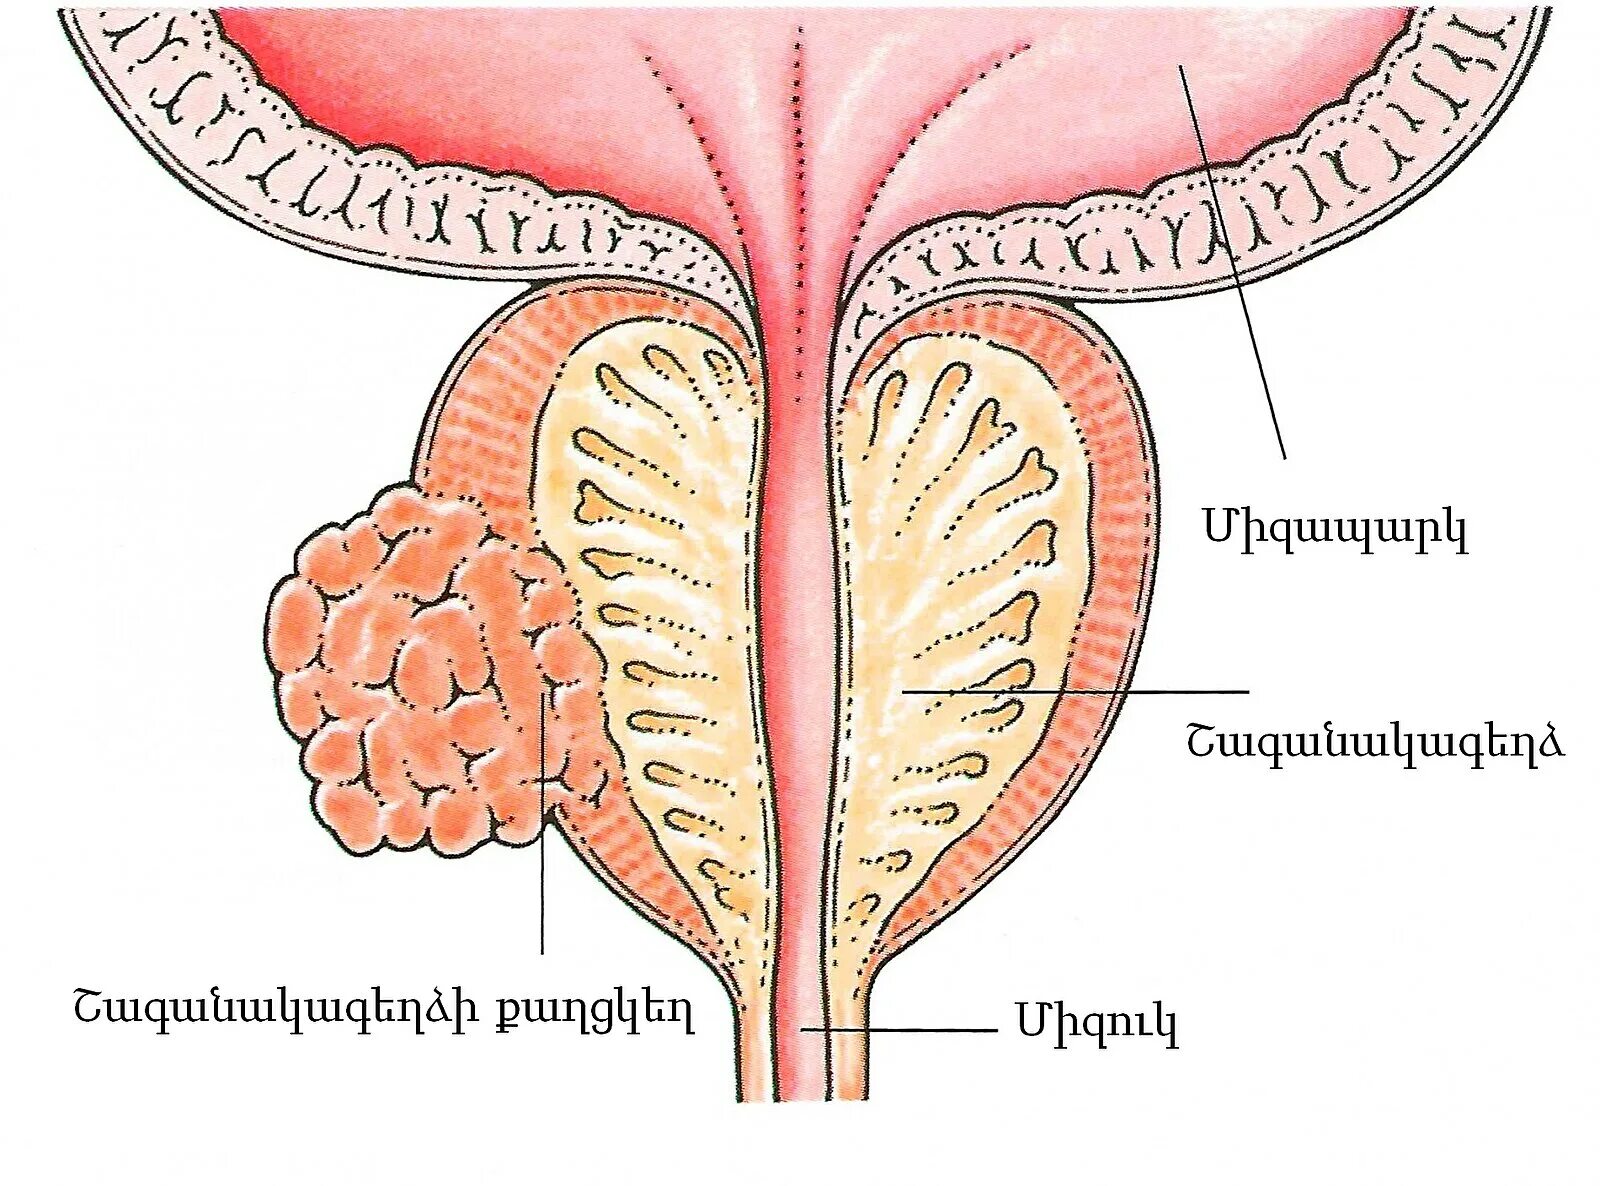 Простата хочет. Анатомия аденомы предстательной железы. Злокачественная аденома предстательной железы. Онкология предстательной железы.